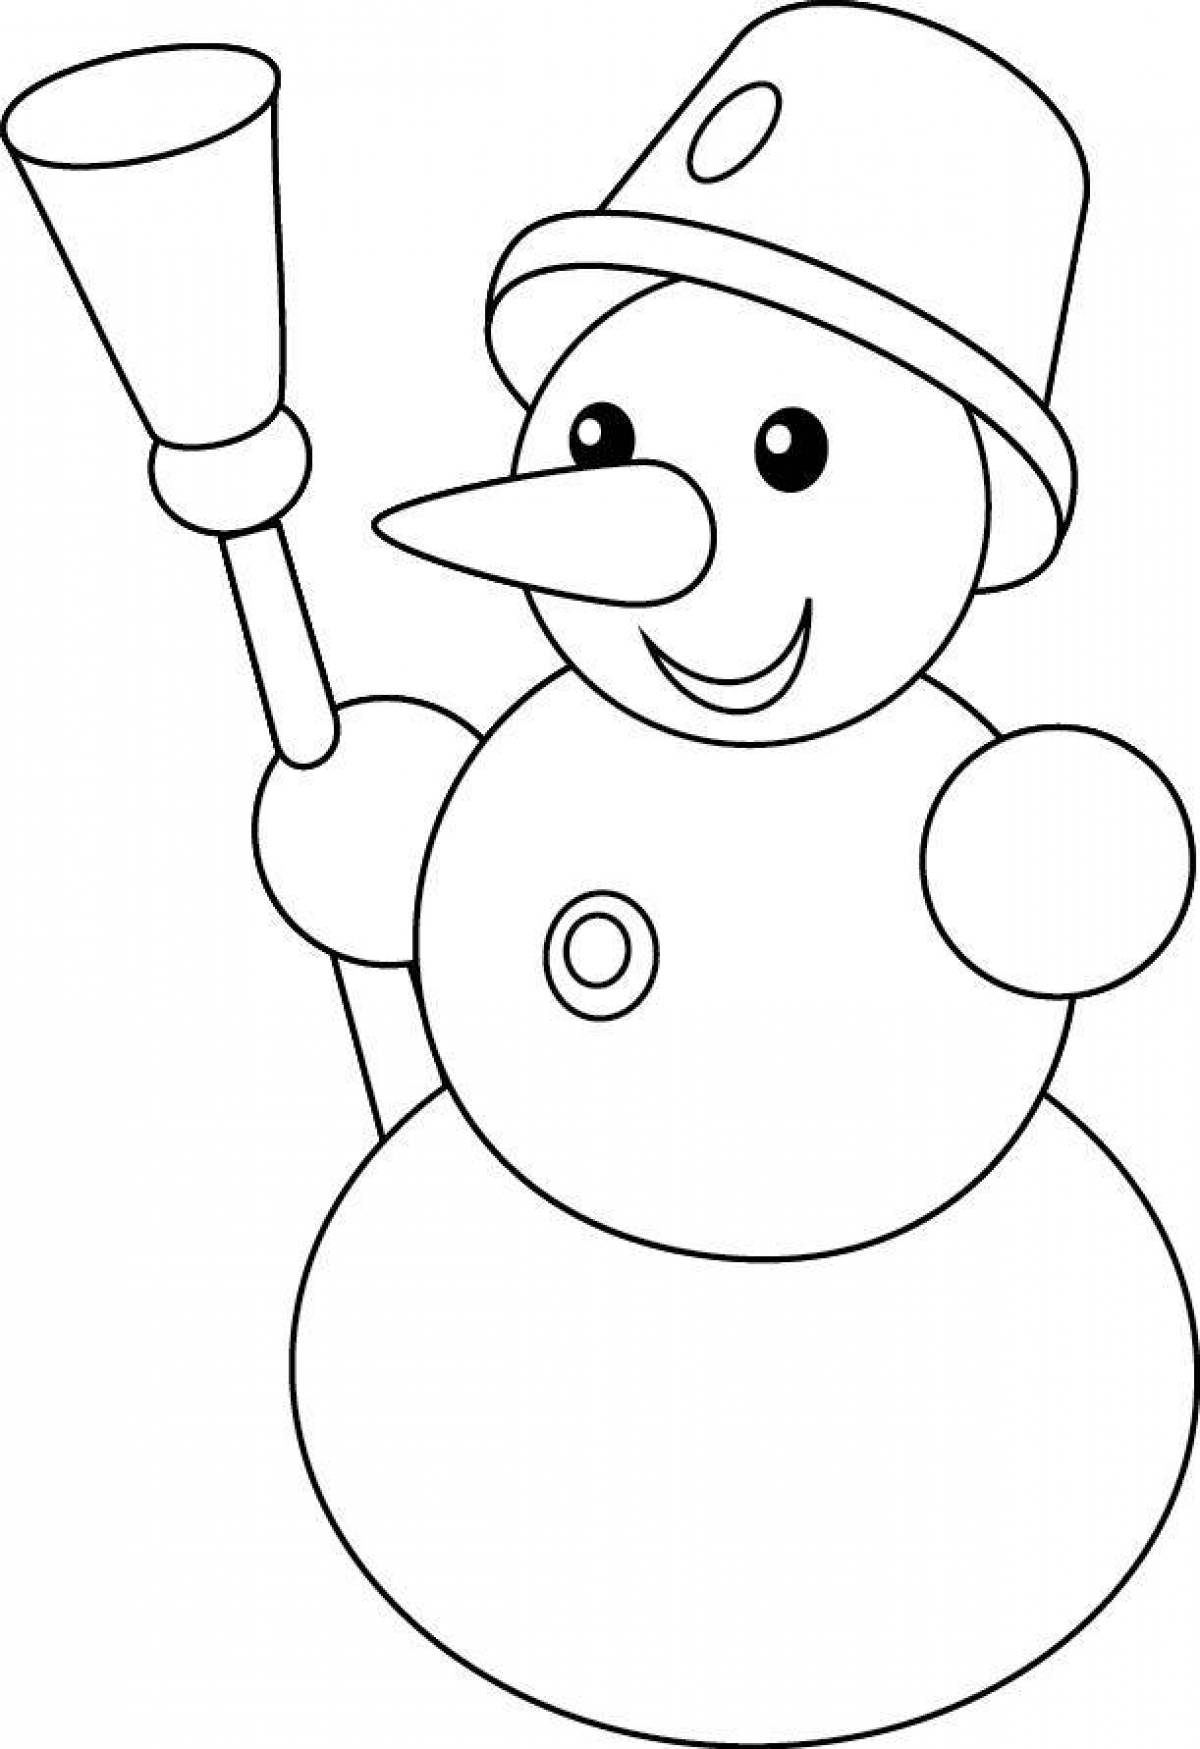 Веселая раскраска снеговик для детей 6-7 лет